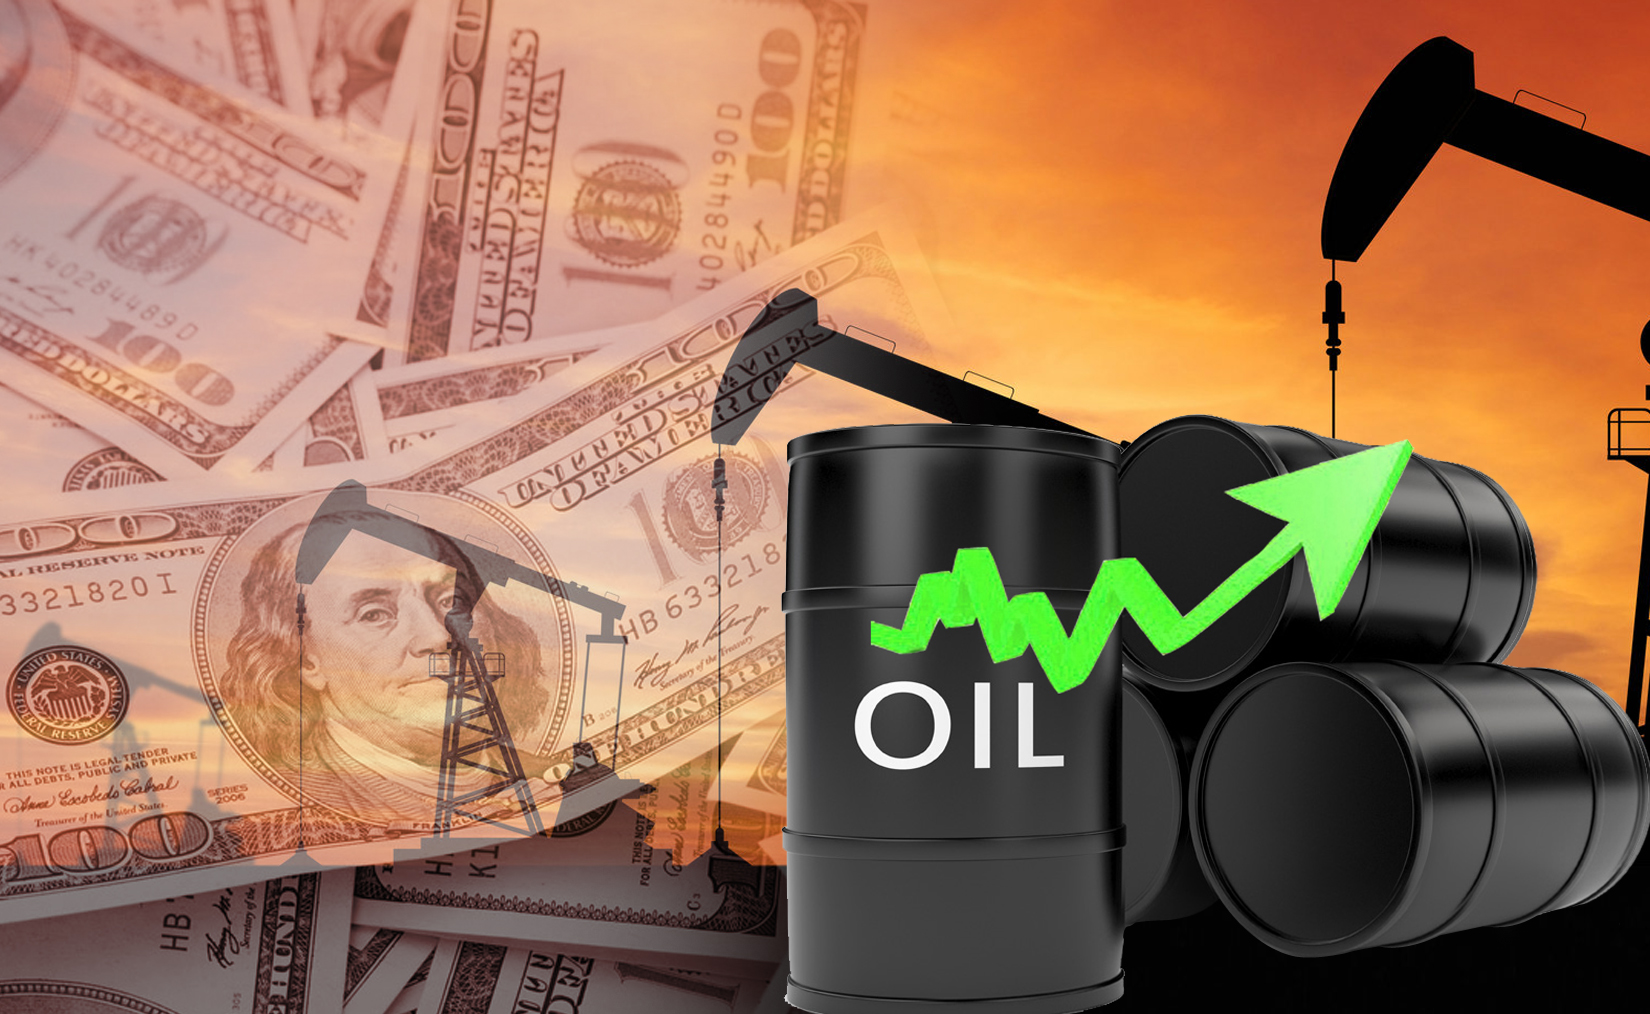 Kuwaiti oil price up 46 cents to USD 55.99 pb - KPC                                                                                                                                                                                                       